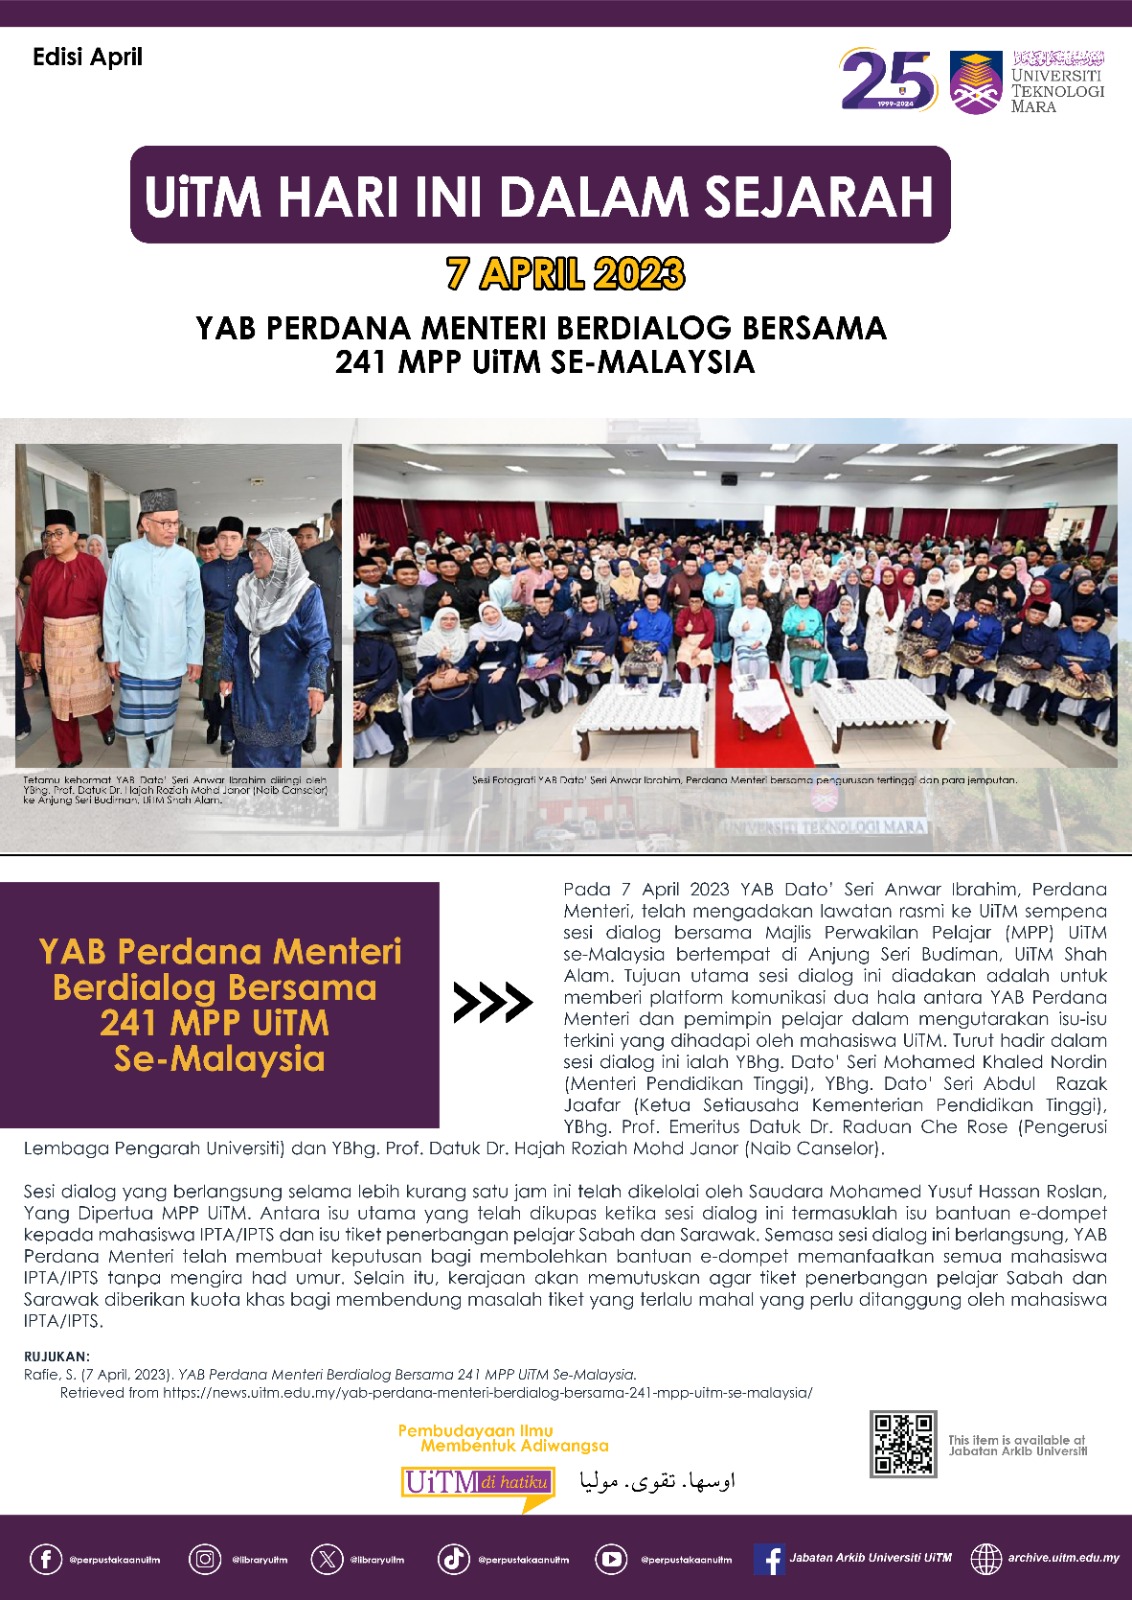 7 April 2023 : Y.A.B Perdana Menteri Berdialog Bersama 241 MPP UiTM Se - Malaysia 